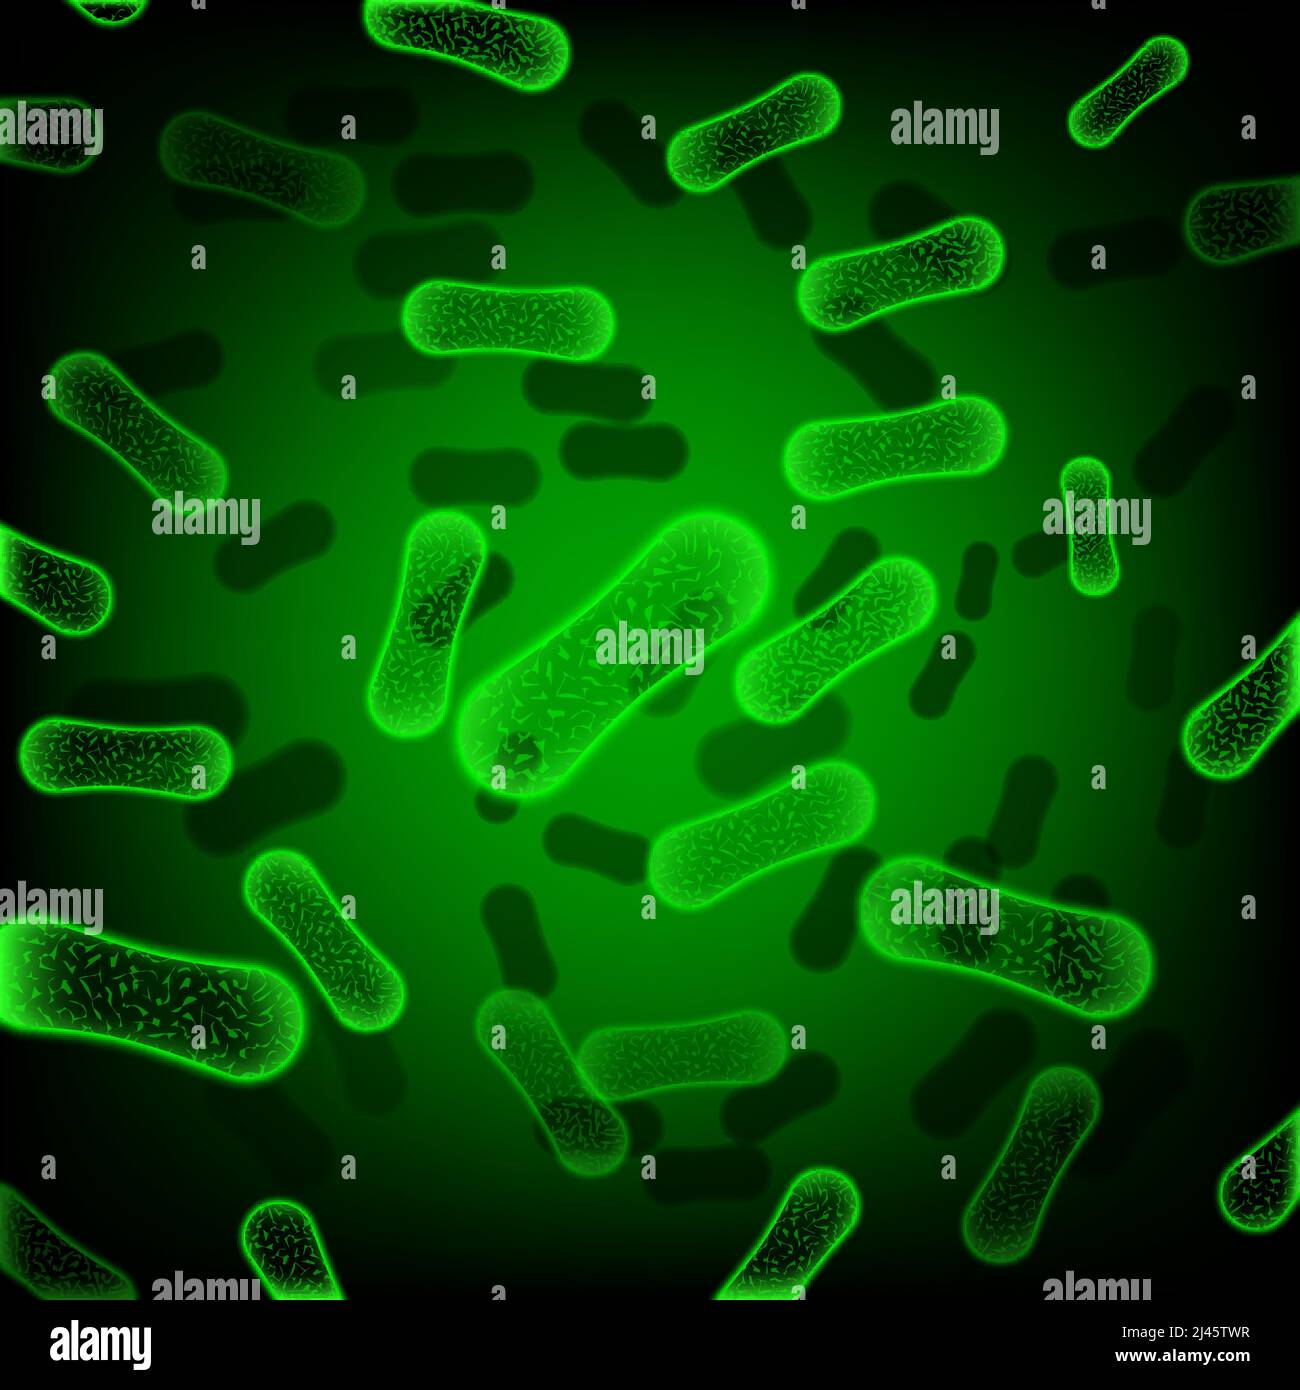 Hintergrund der grünen, stäbchenförmigen Bakterien. Forschung, Wissenschaft, Virus. Biologiekonzept. Kann für Poster, Broschüren und Broschüren verwendet werden Stock Vektor